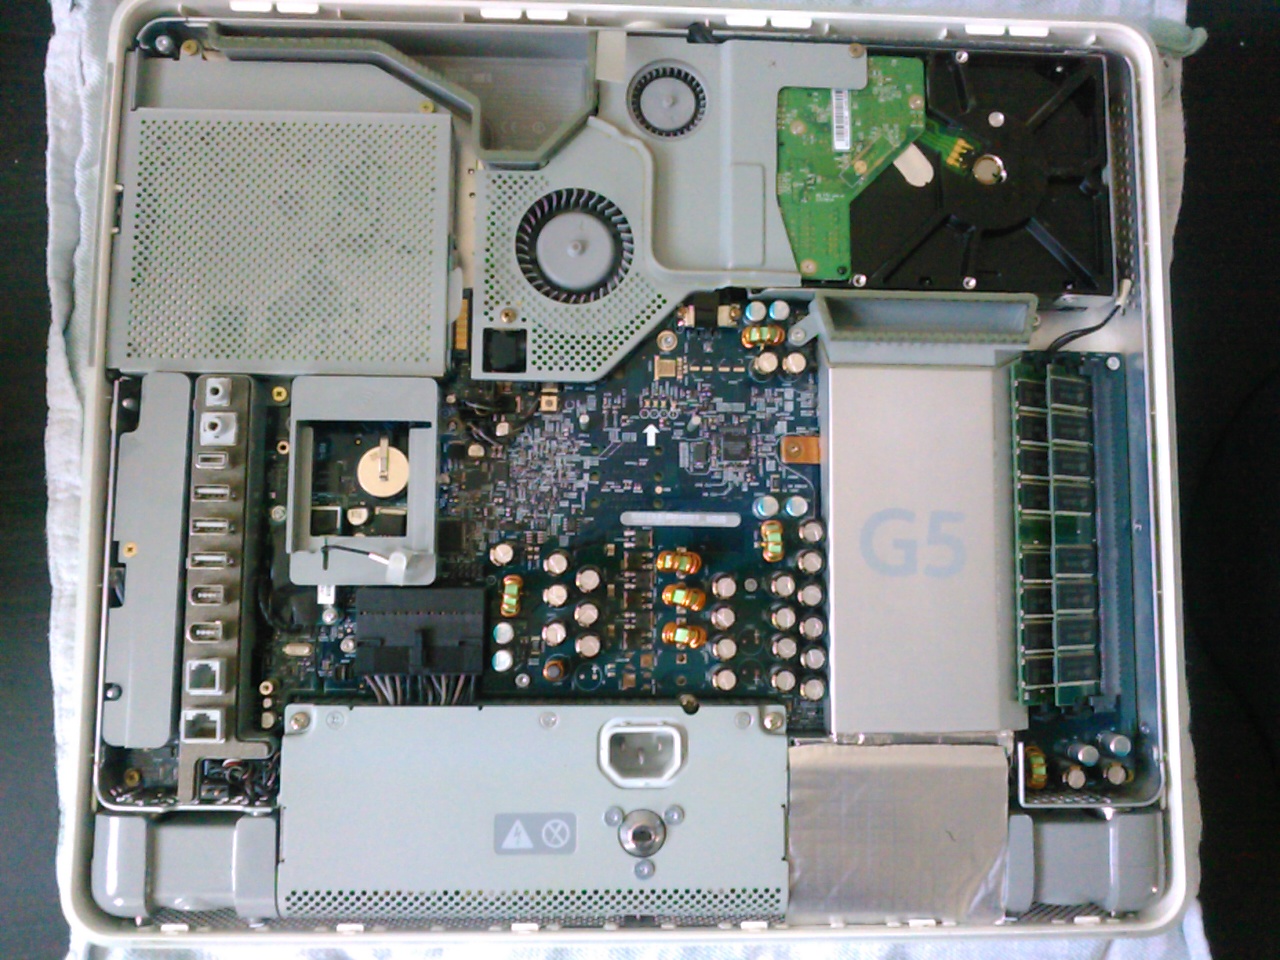 iMac G5 open